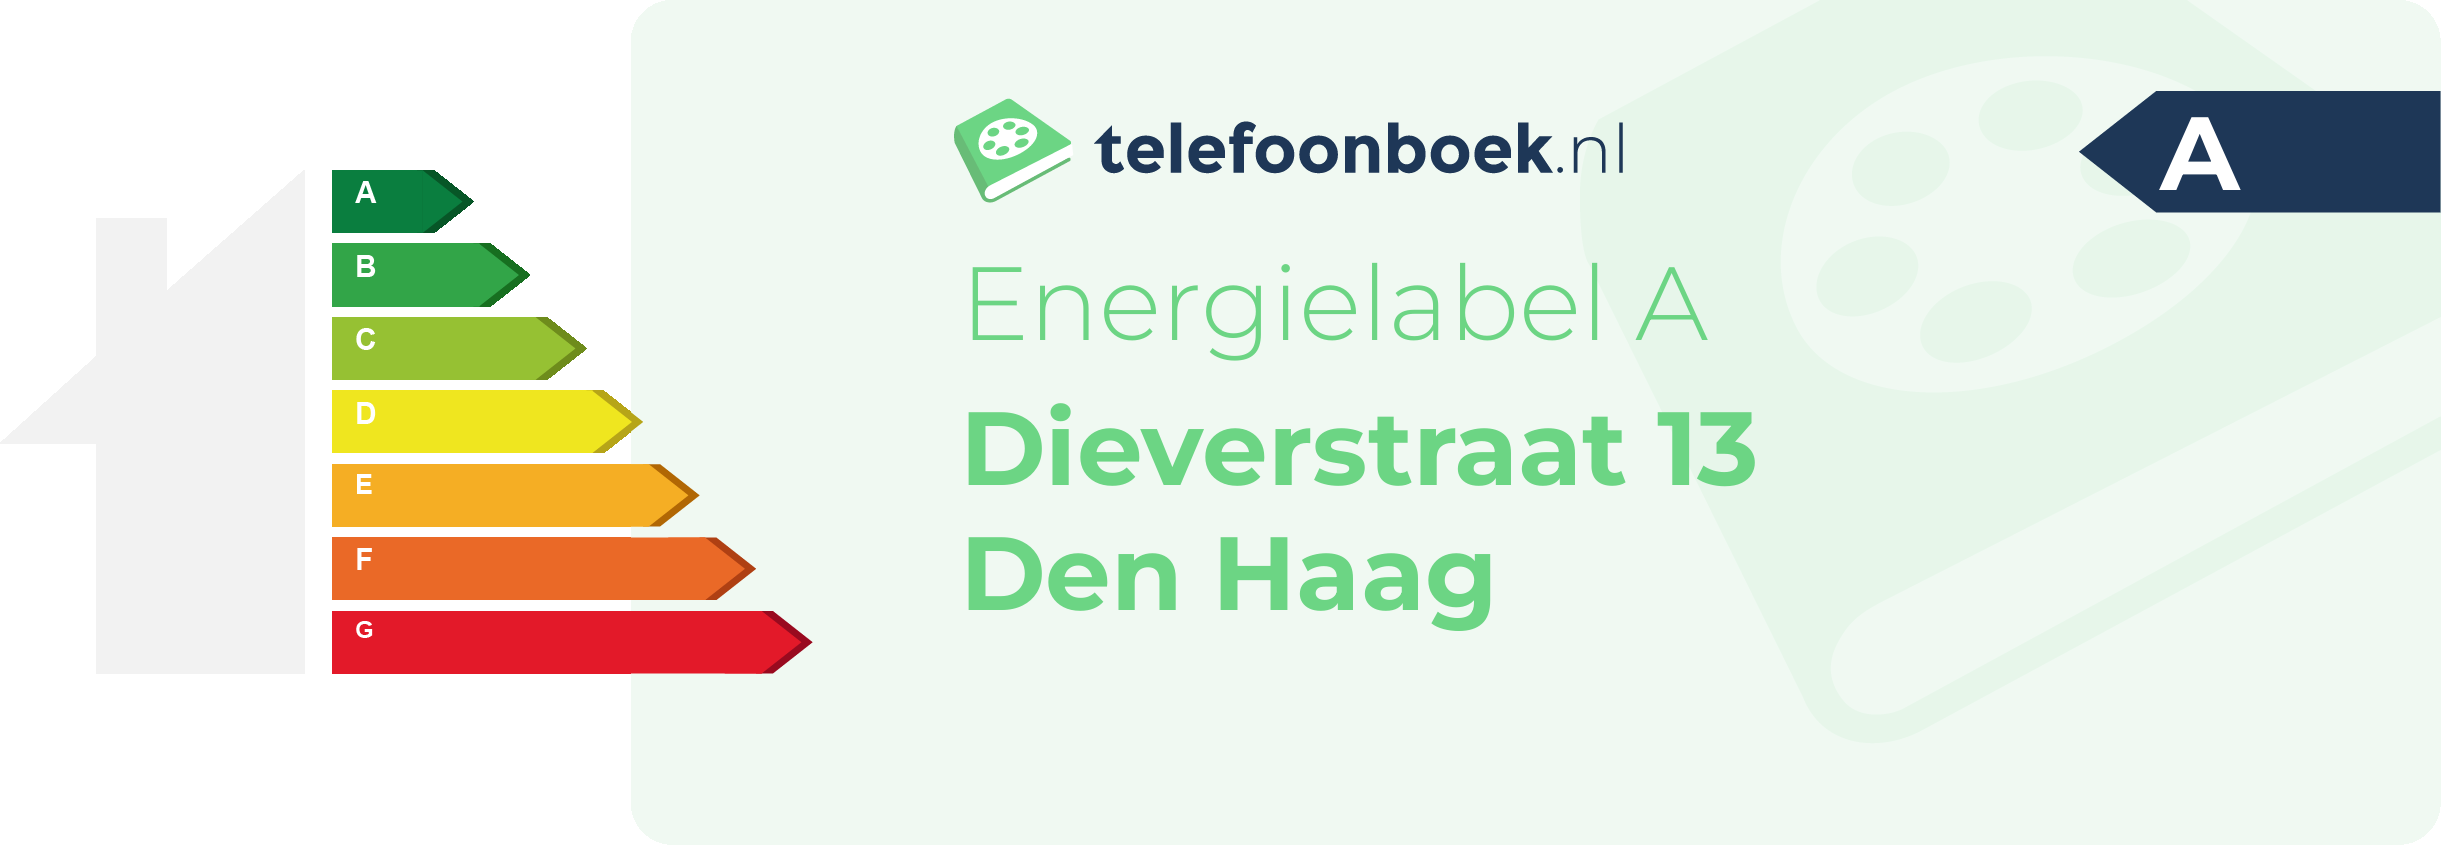 Energielabel Dieverstraat 13 Den Haag